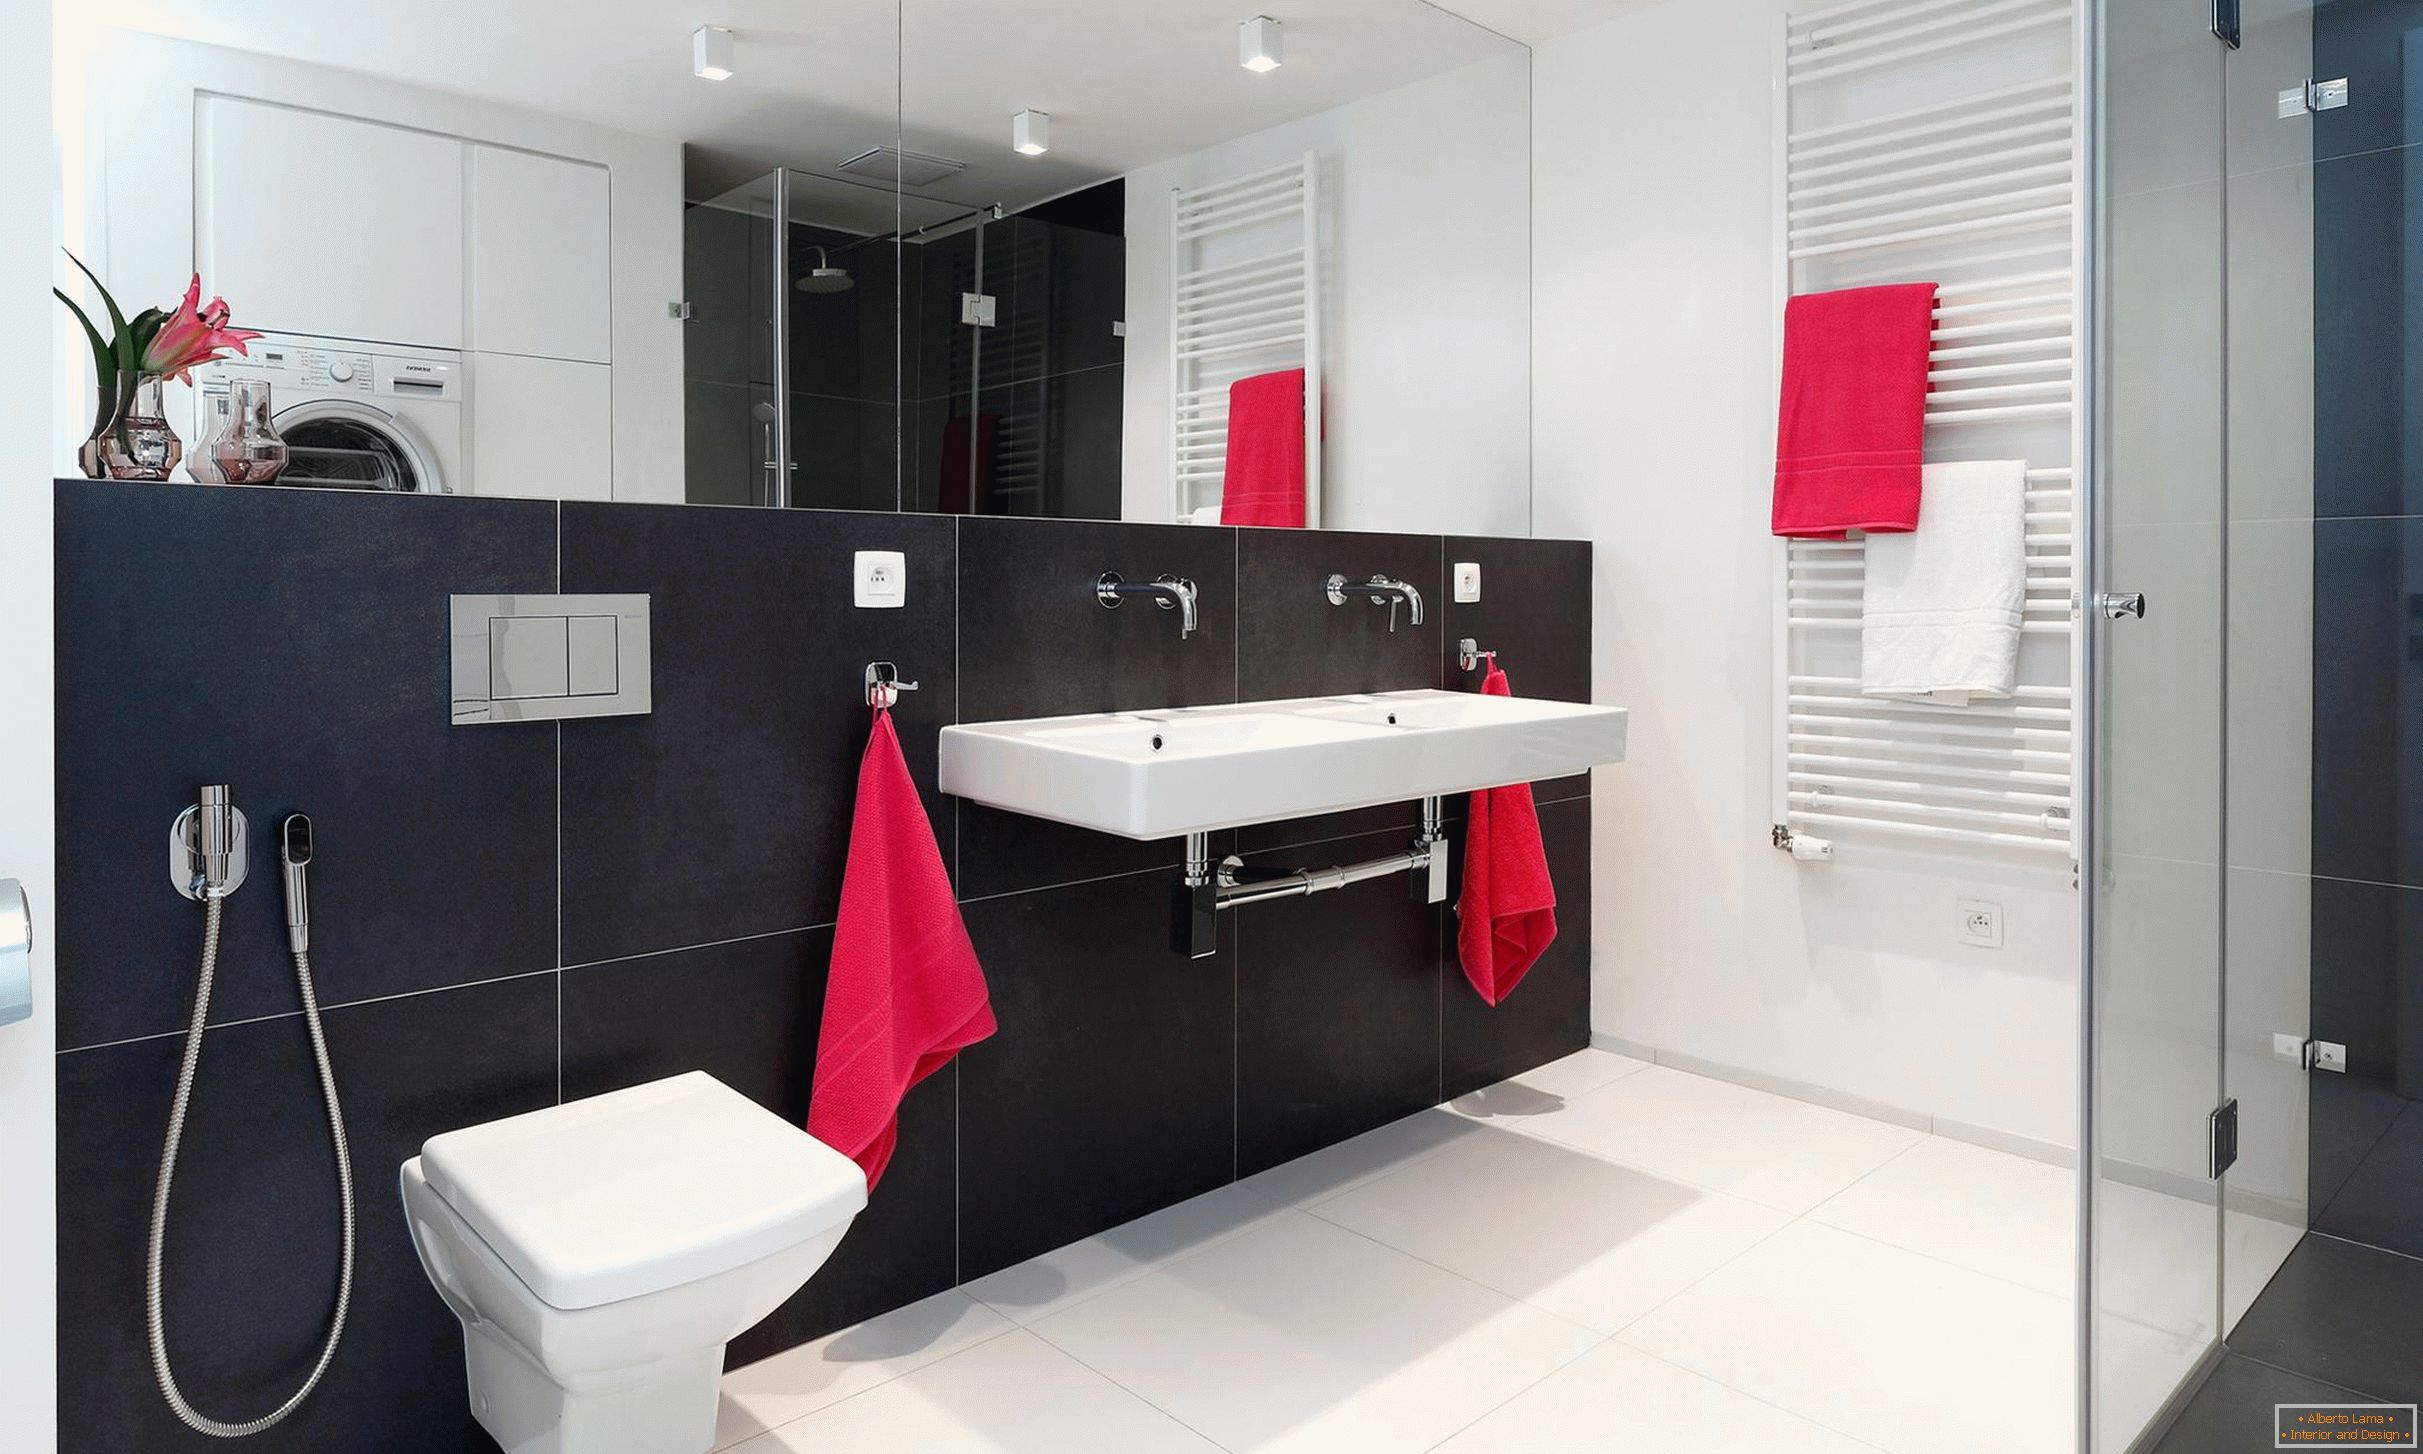 Crveni, beli i crni u dizajnu kupatila